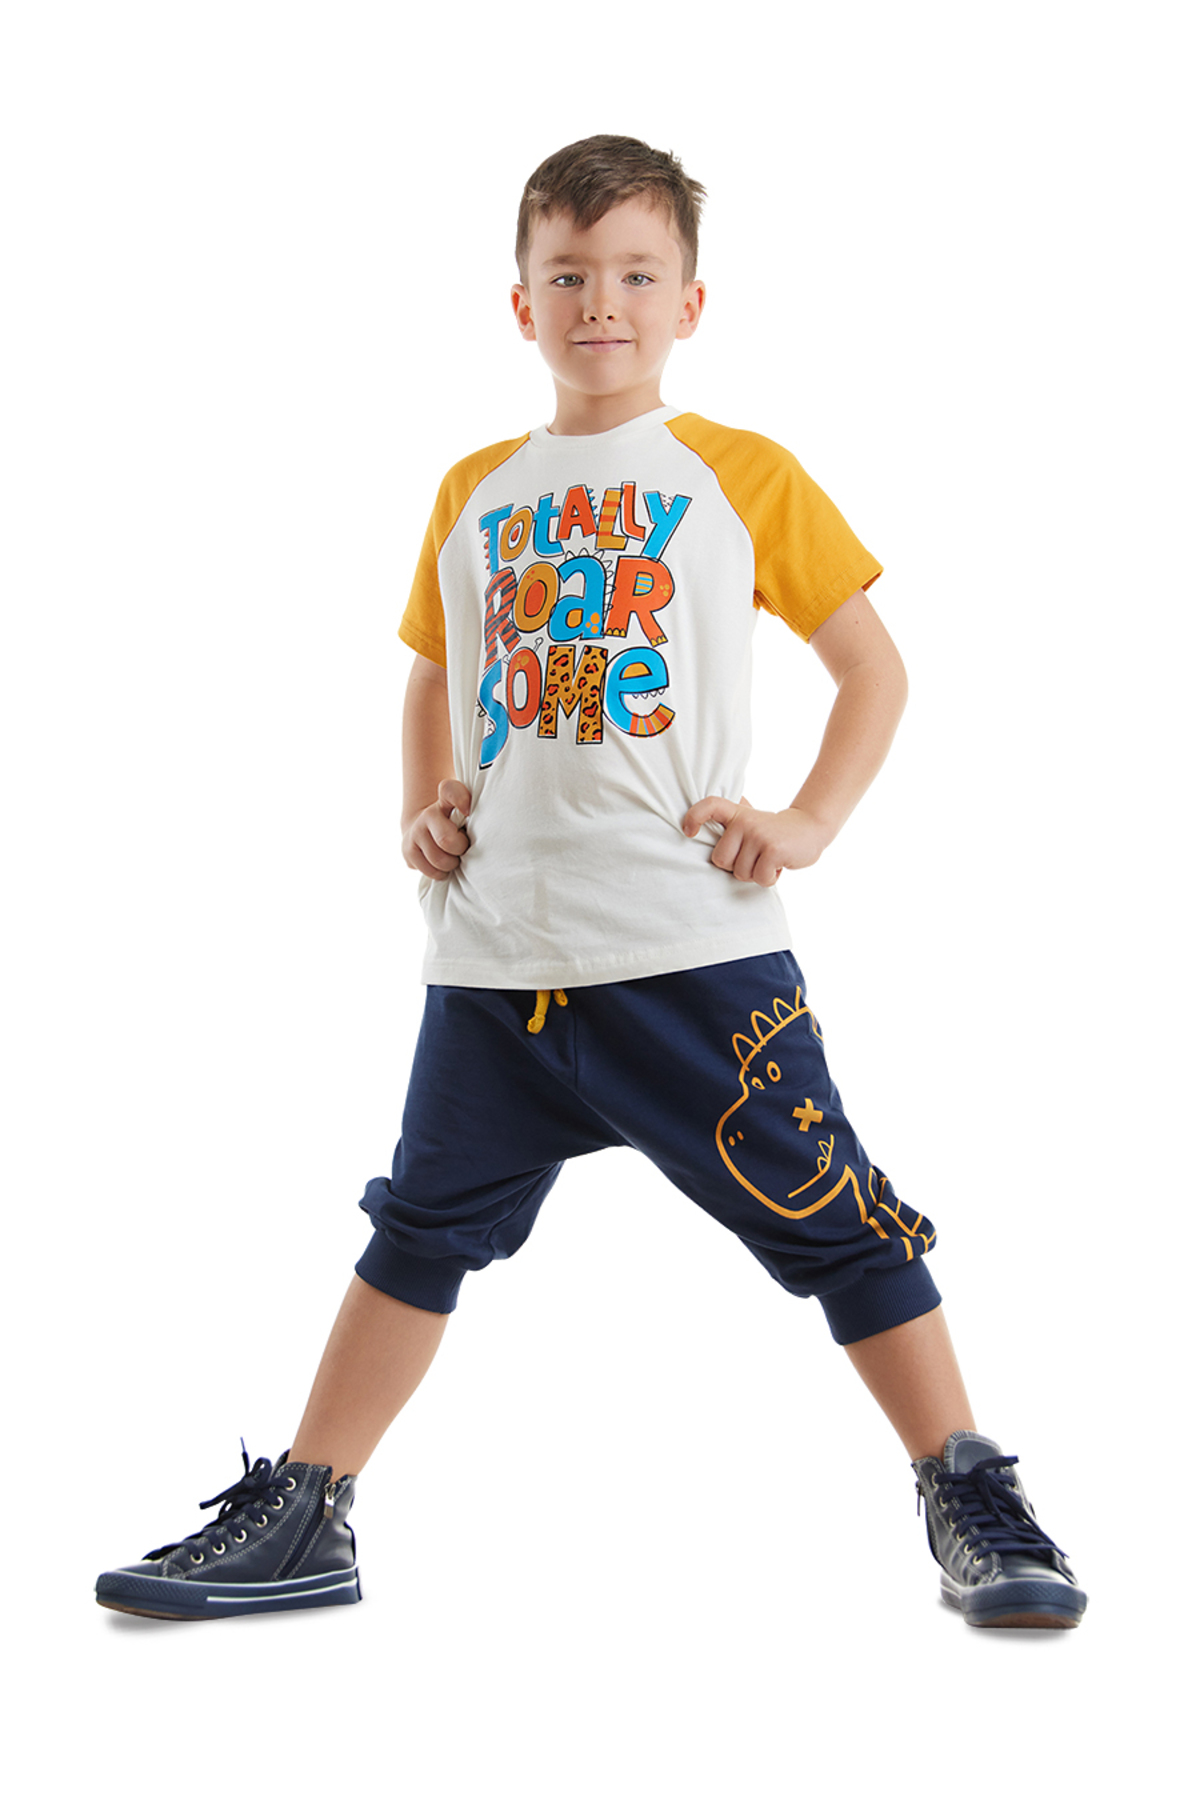 Denokids Roarsome Boys T-shirt Capri Shorts Set